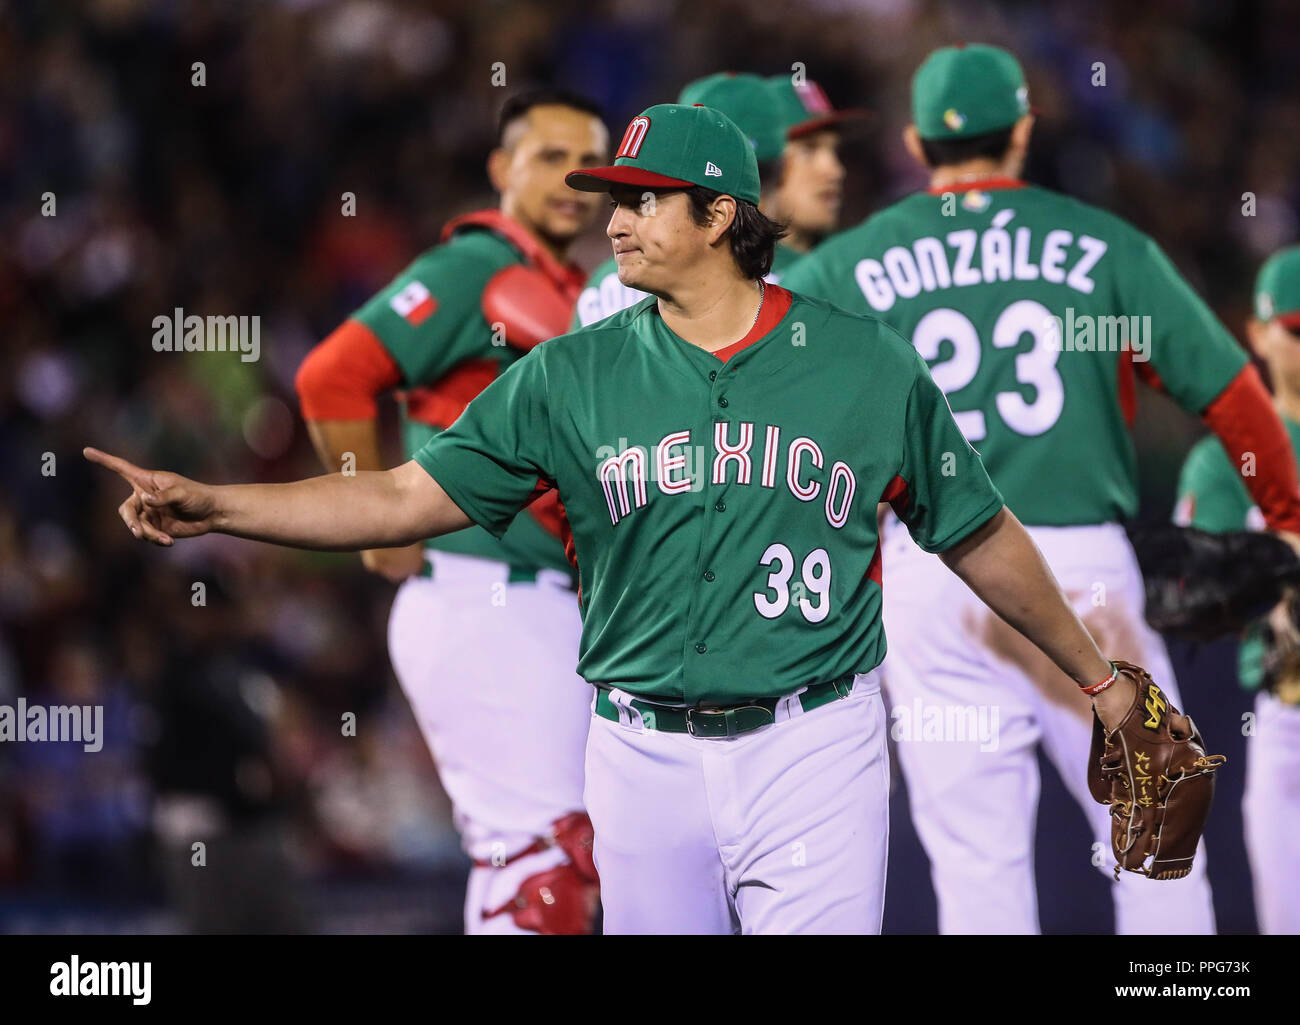 Luis Mendoza pitcher abridor de Mexico se lleva una ovación al abandonar el partido en quinto inning, durante el partido Mexico vs Venezuela, World B Stock Photo